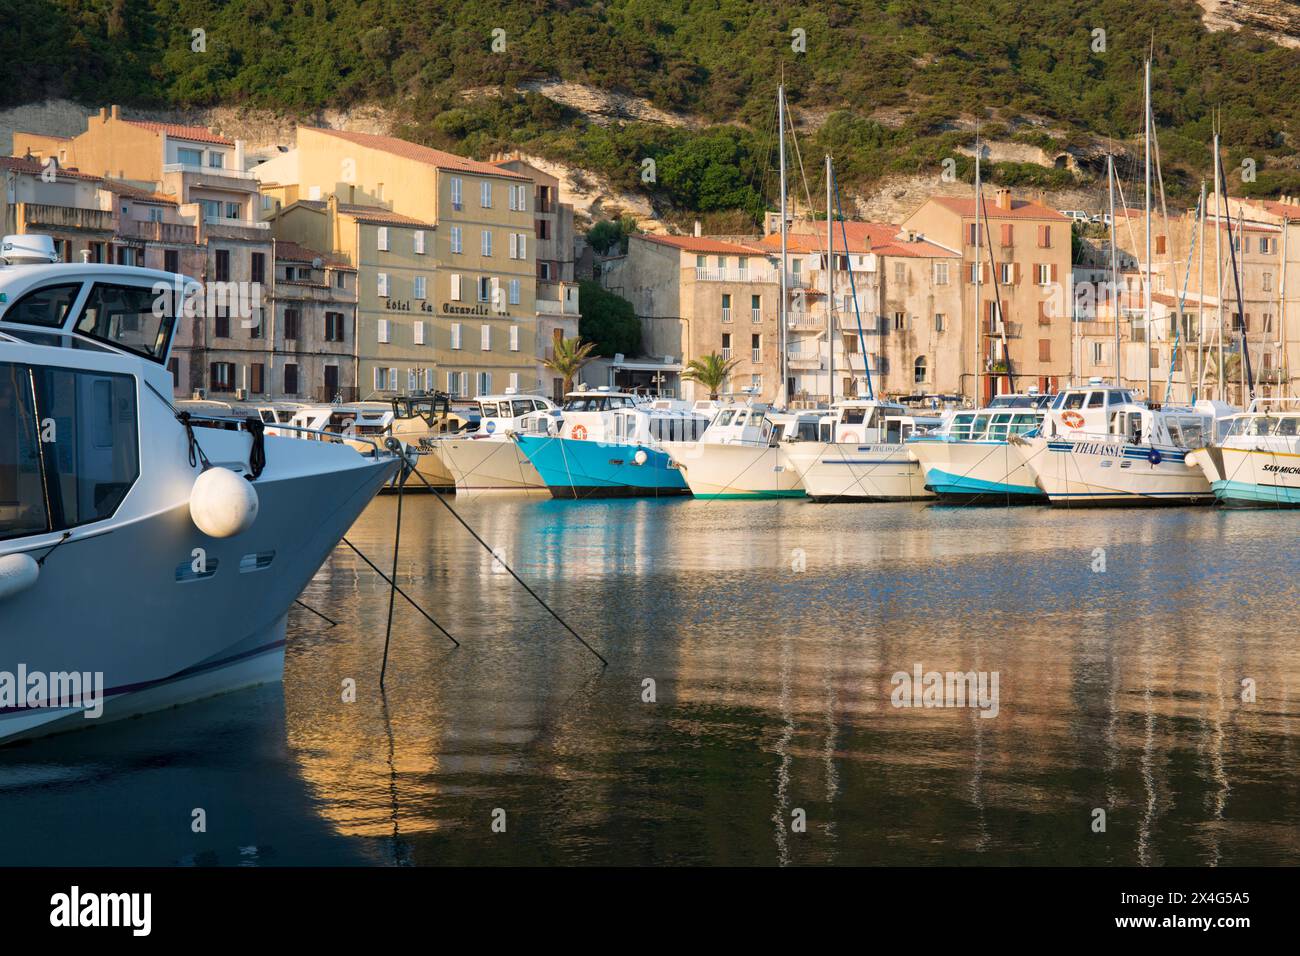 Bonifacio, Corse-du-Sud, Korsika, Frankreich. Blick über den Hafen bei Sonnenaufgang, verankerte Sightseeing-Boote spiegeln sich im ruhigen Wasser. Stockfoto